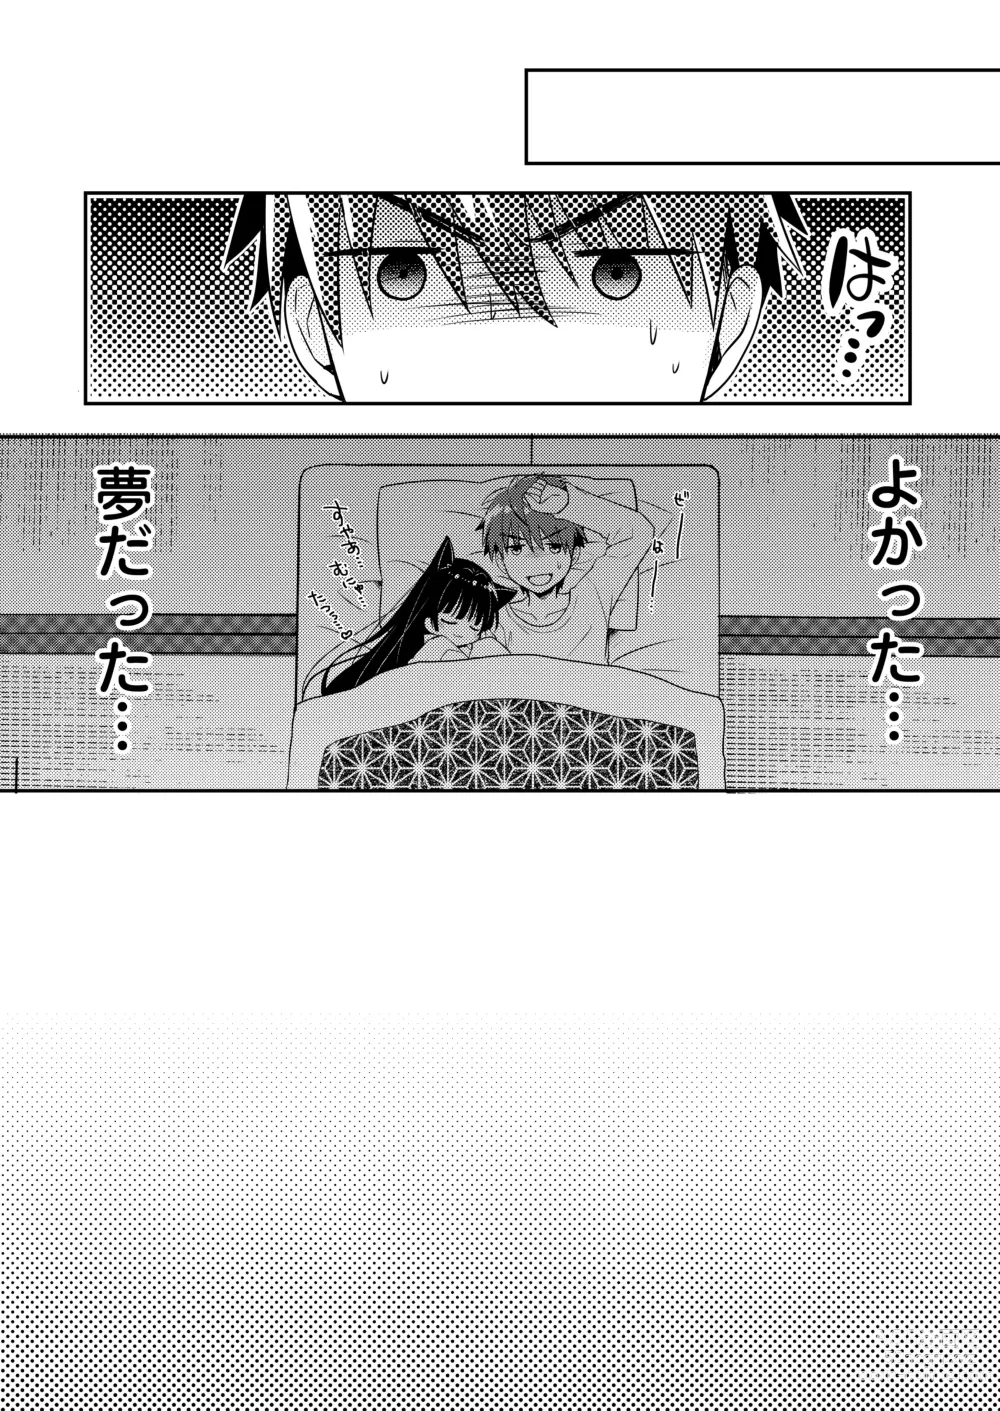 Page 59 of doujinshi Oyasumi Neko  Ecchi - Sleeping x Cat x Ecchi